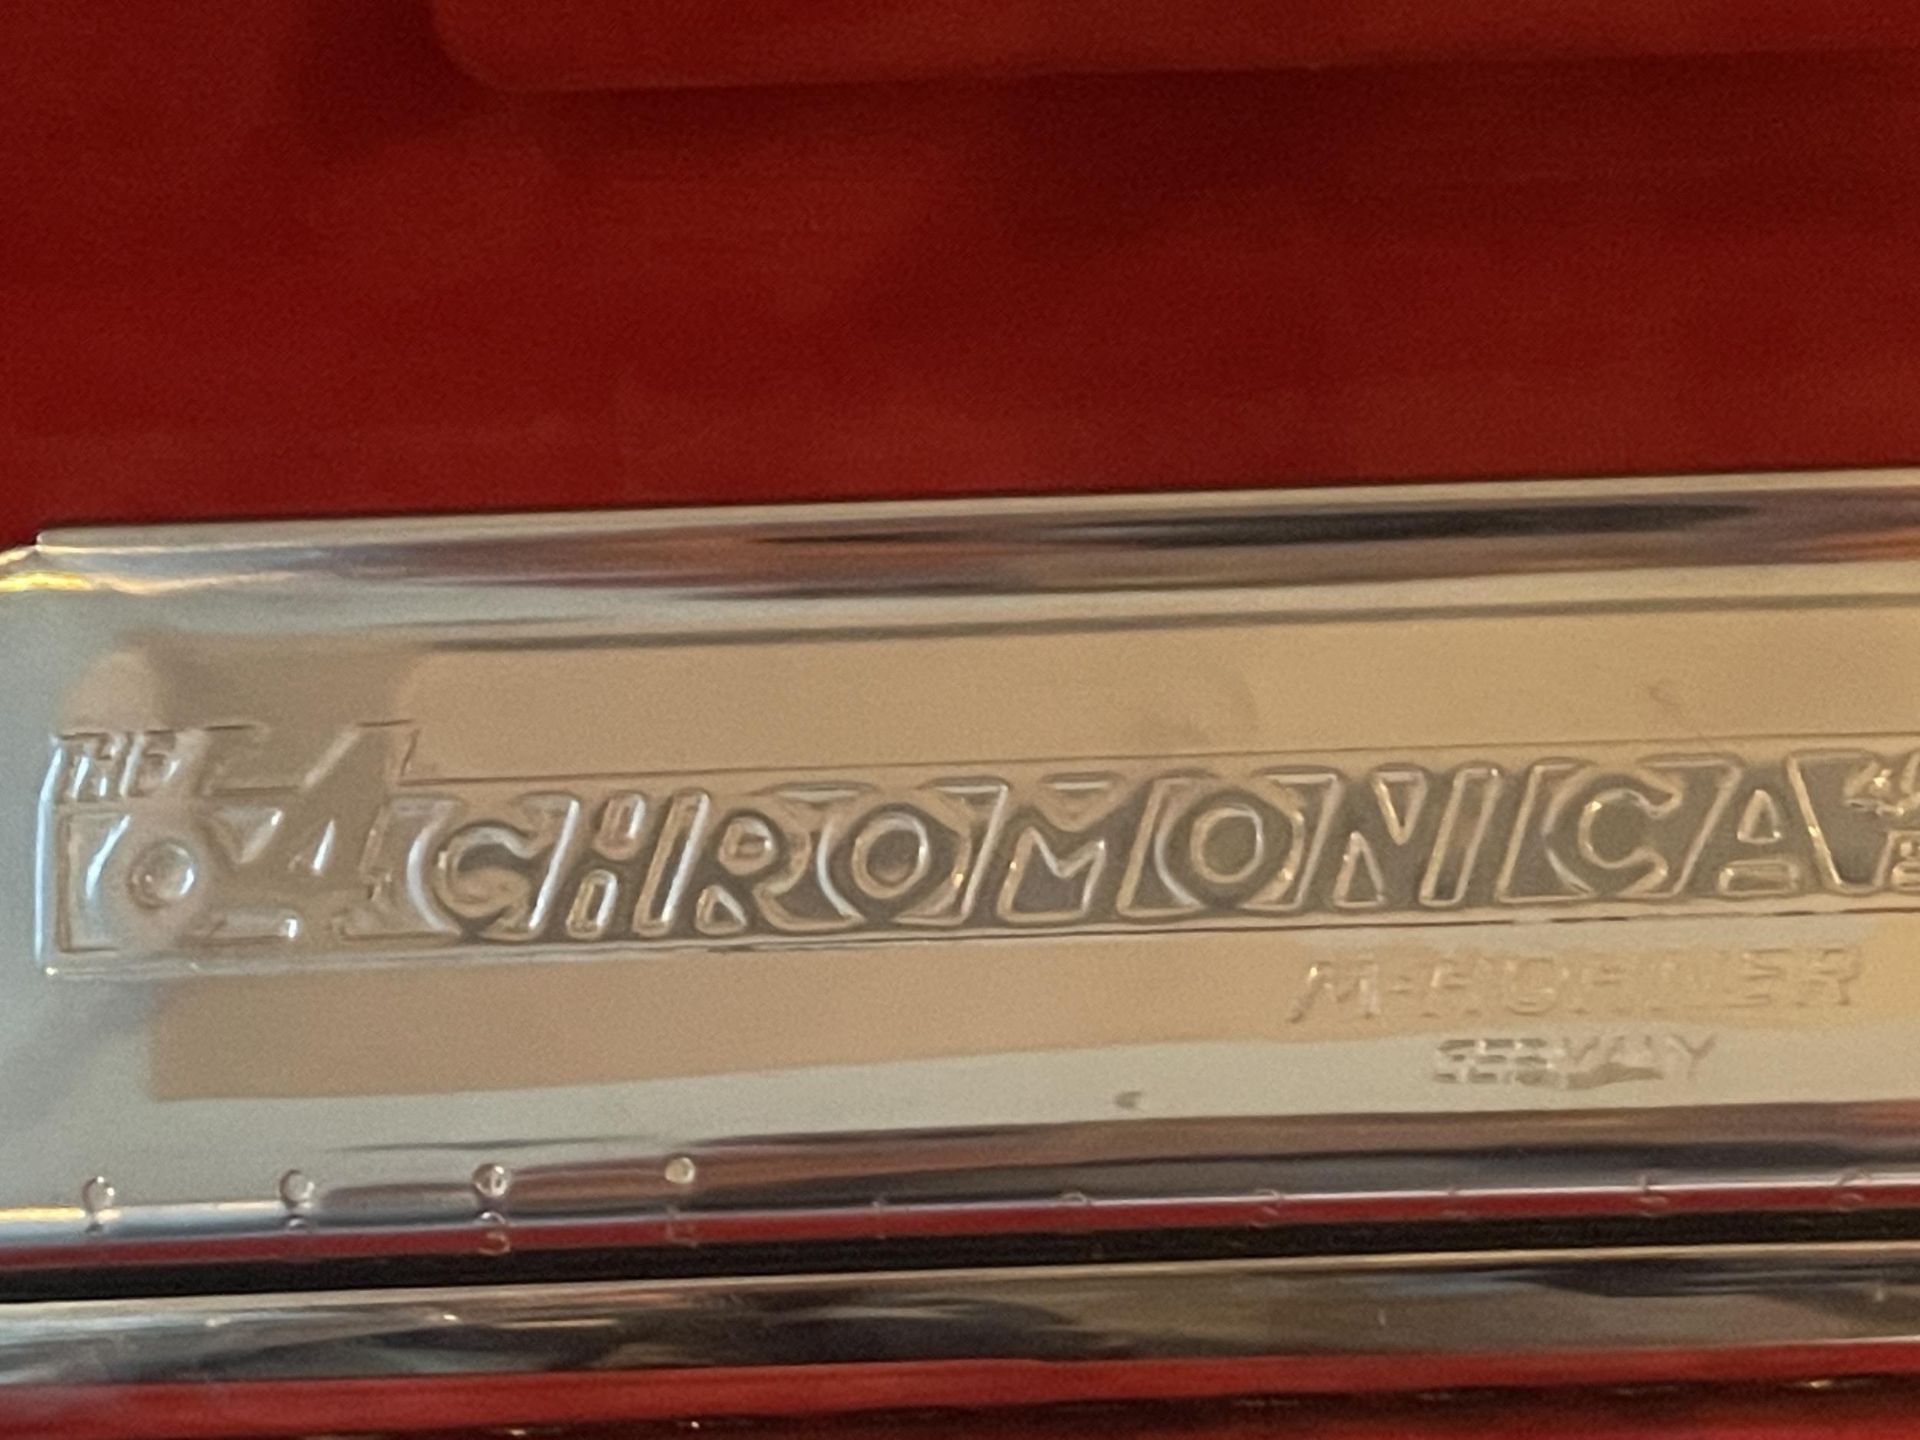 A HOHNER CHROMONICA 280C HARMONICA WITH ORIGINAL CASE - Image 3 of 6